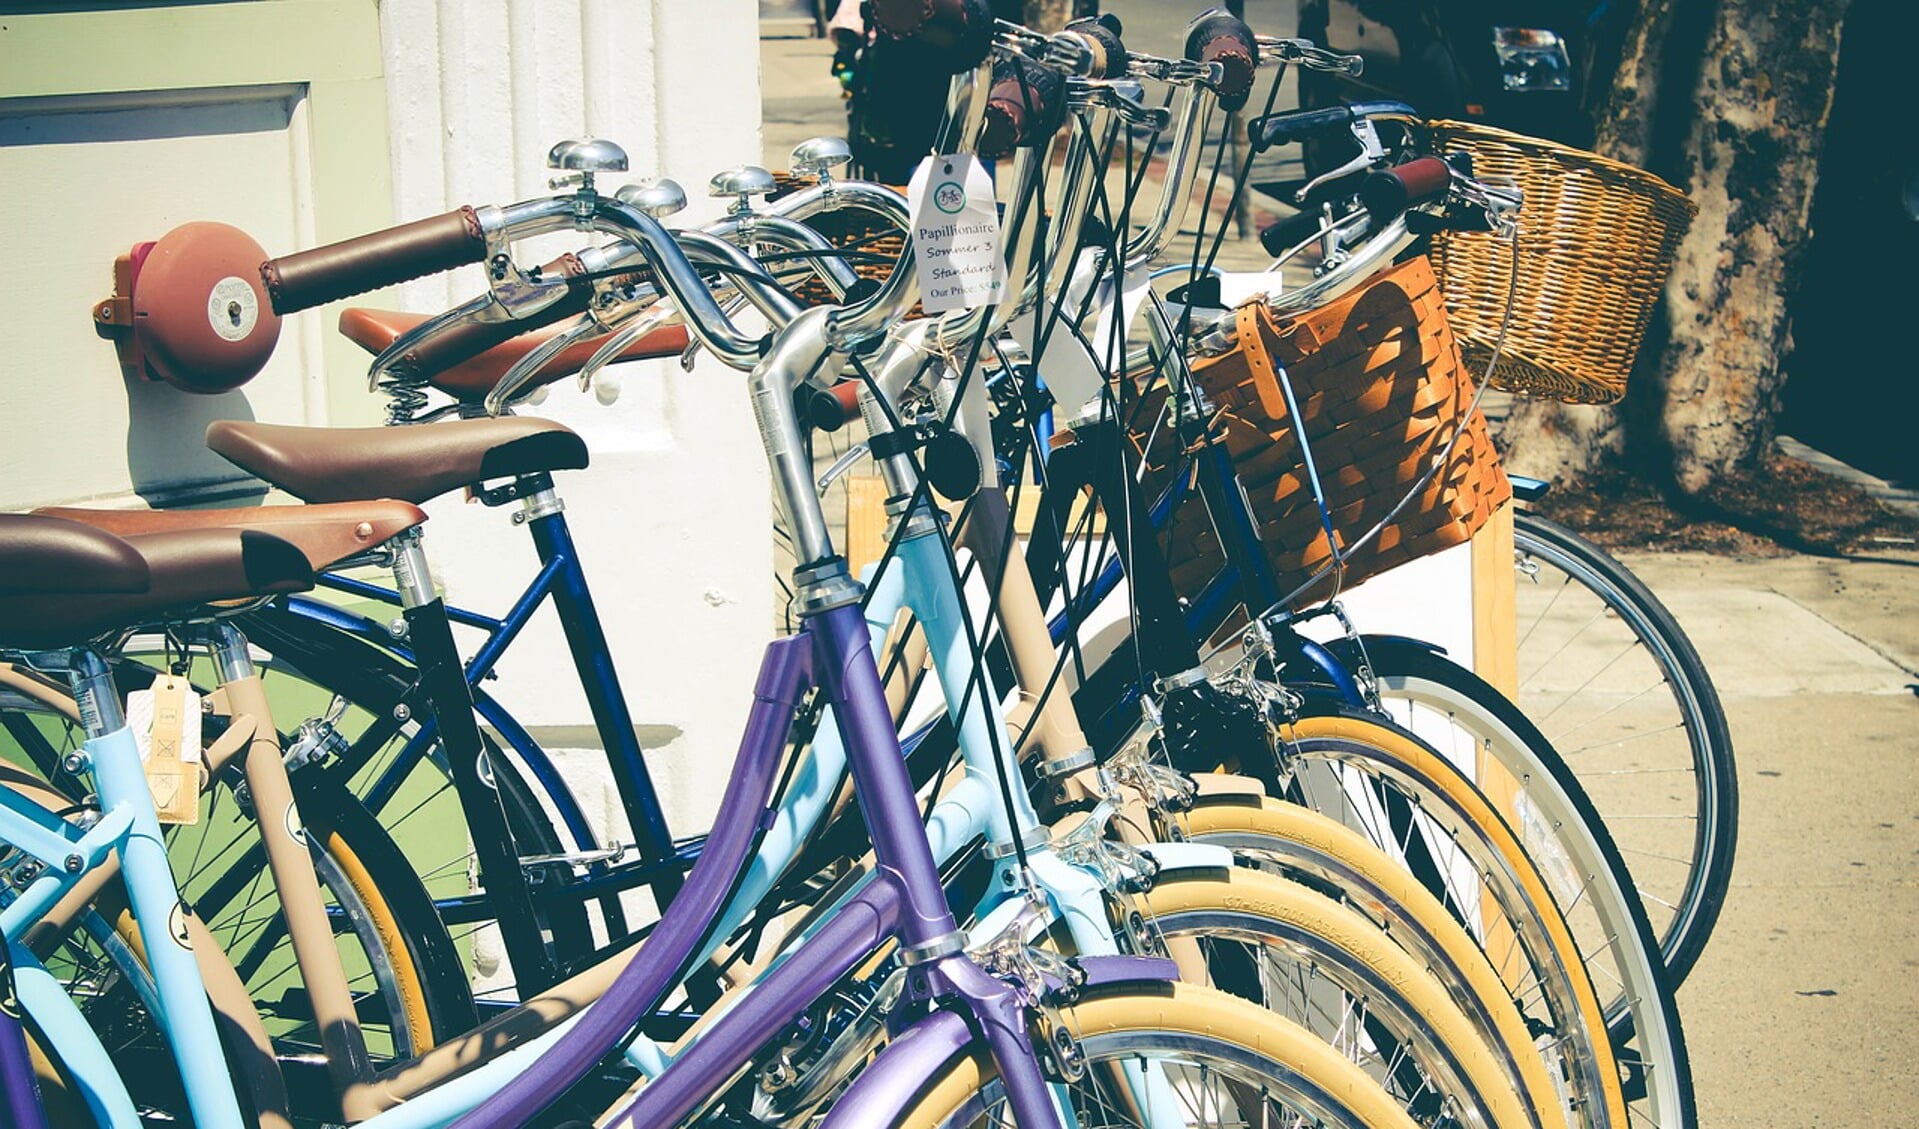 Wie kan VluchtelingenWerk aan wat fietsen helpen? Daar gaan ze vluchtelingen op leren fietsen. Want kunnen fietsen, dat betekent ook vrijheid.